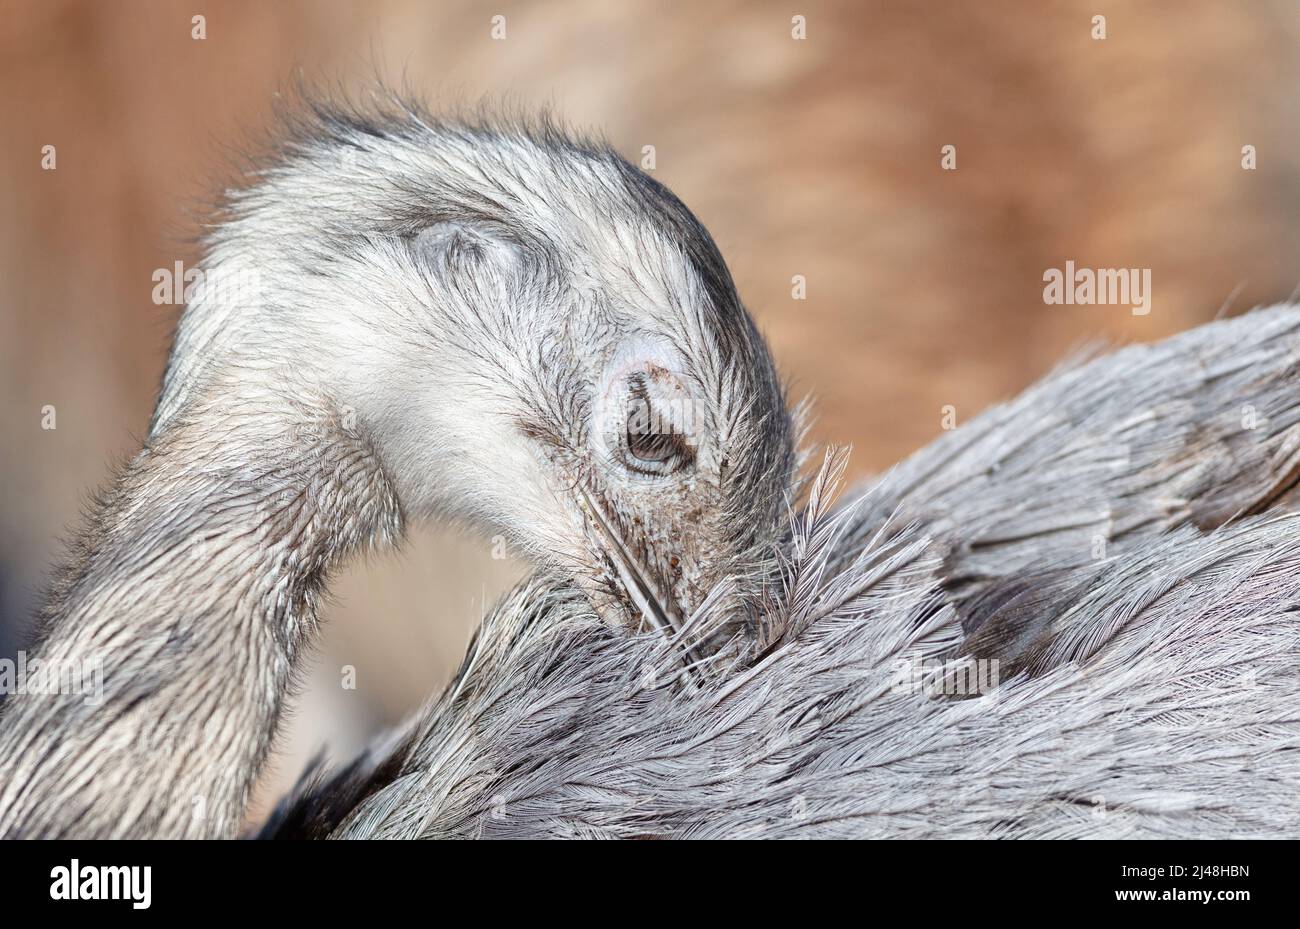 Photo à la tête d'un oiseau nandoe de Darwin, oiseau sud-américain de Rhea pennata Banque D'Images